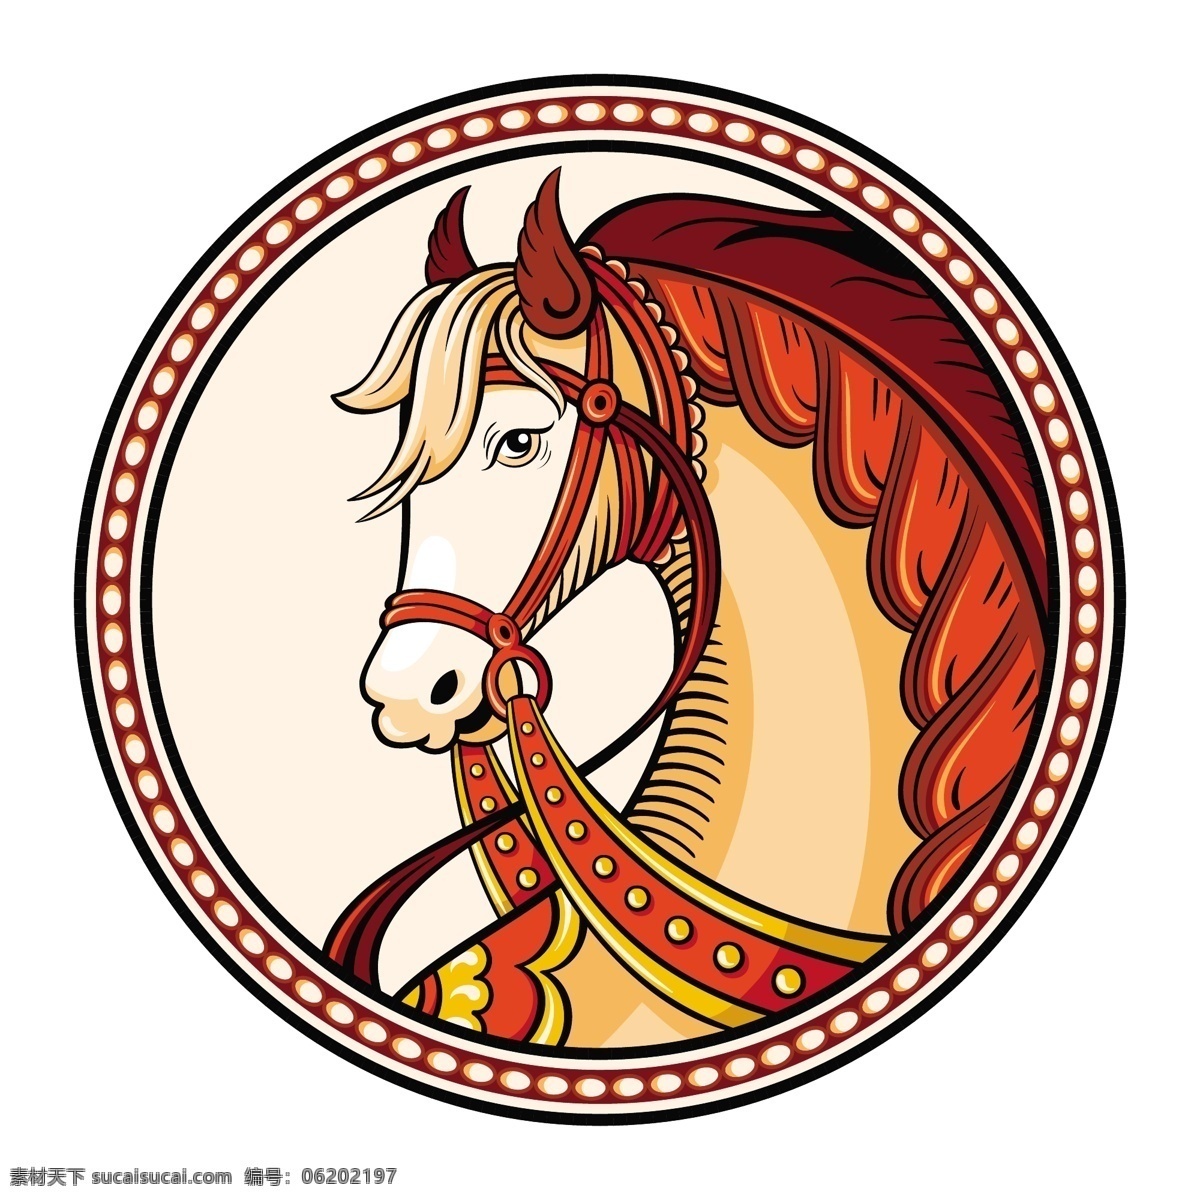 骏马 logo 图标 标签 卡通 赛马场标签 矢量图 图标商标 企业商标 马头像 标志图标 企业 标志